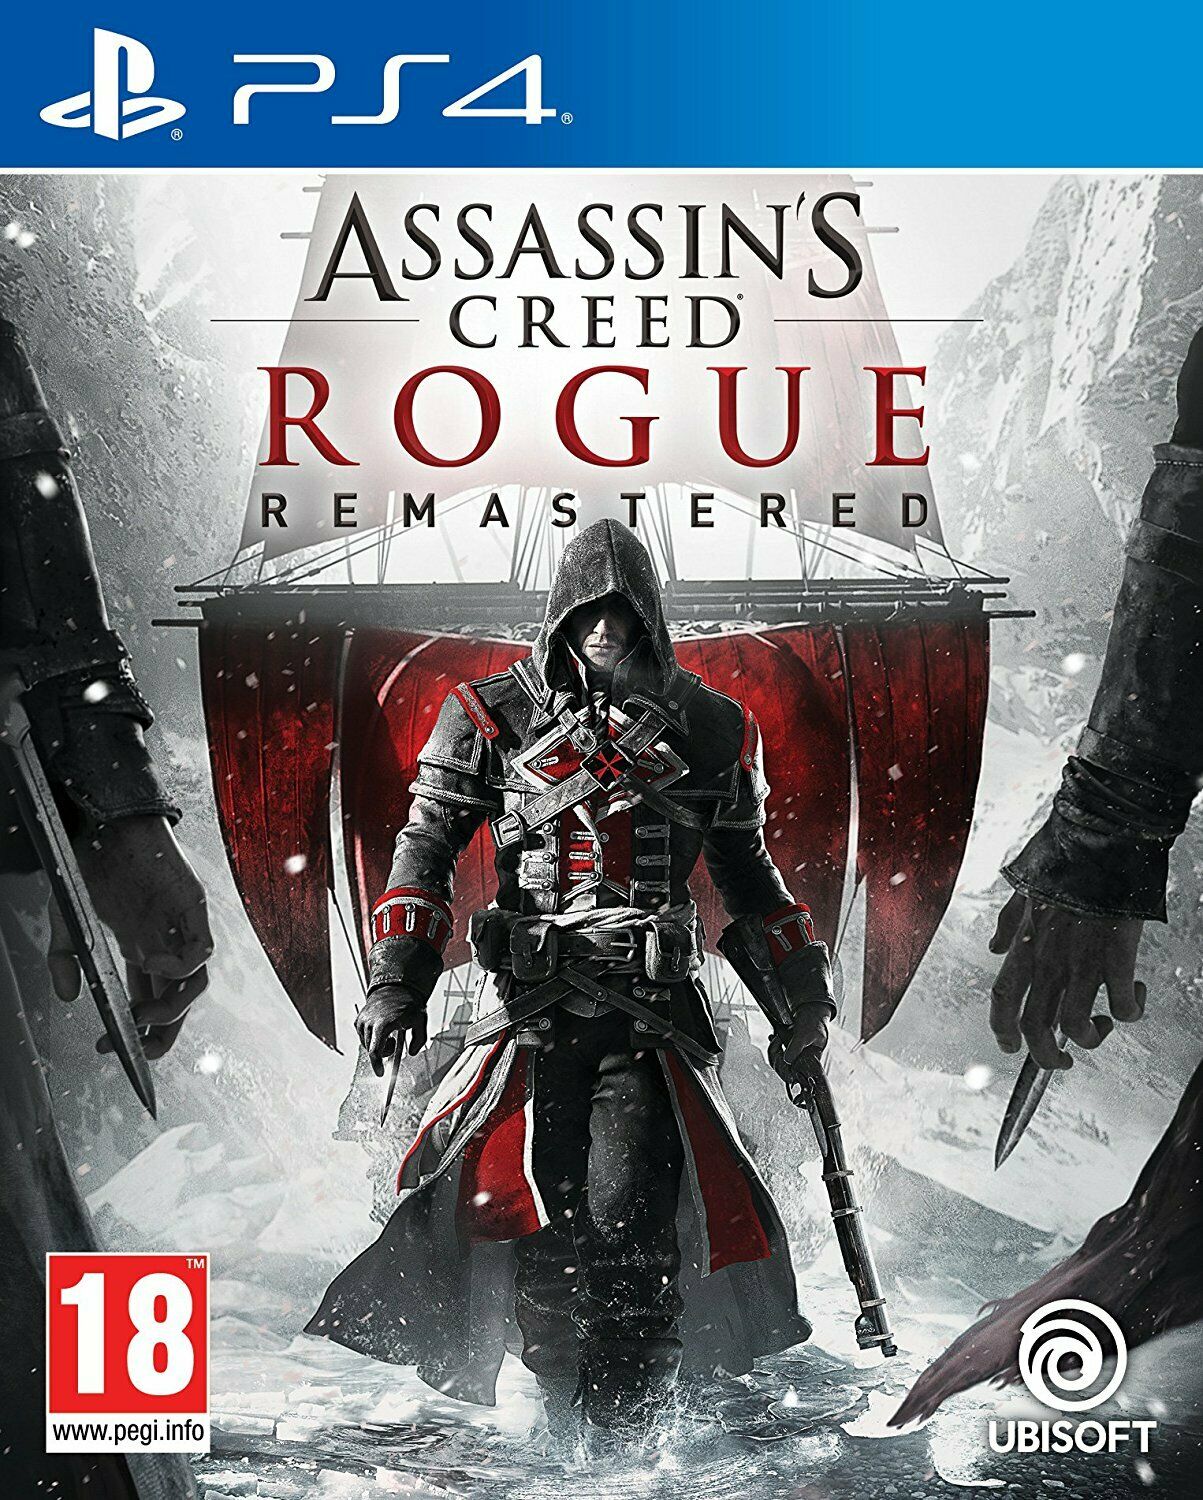 Assassin's Creed Rogue Remastered | PlayStation 4 PS4 - saynama